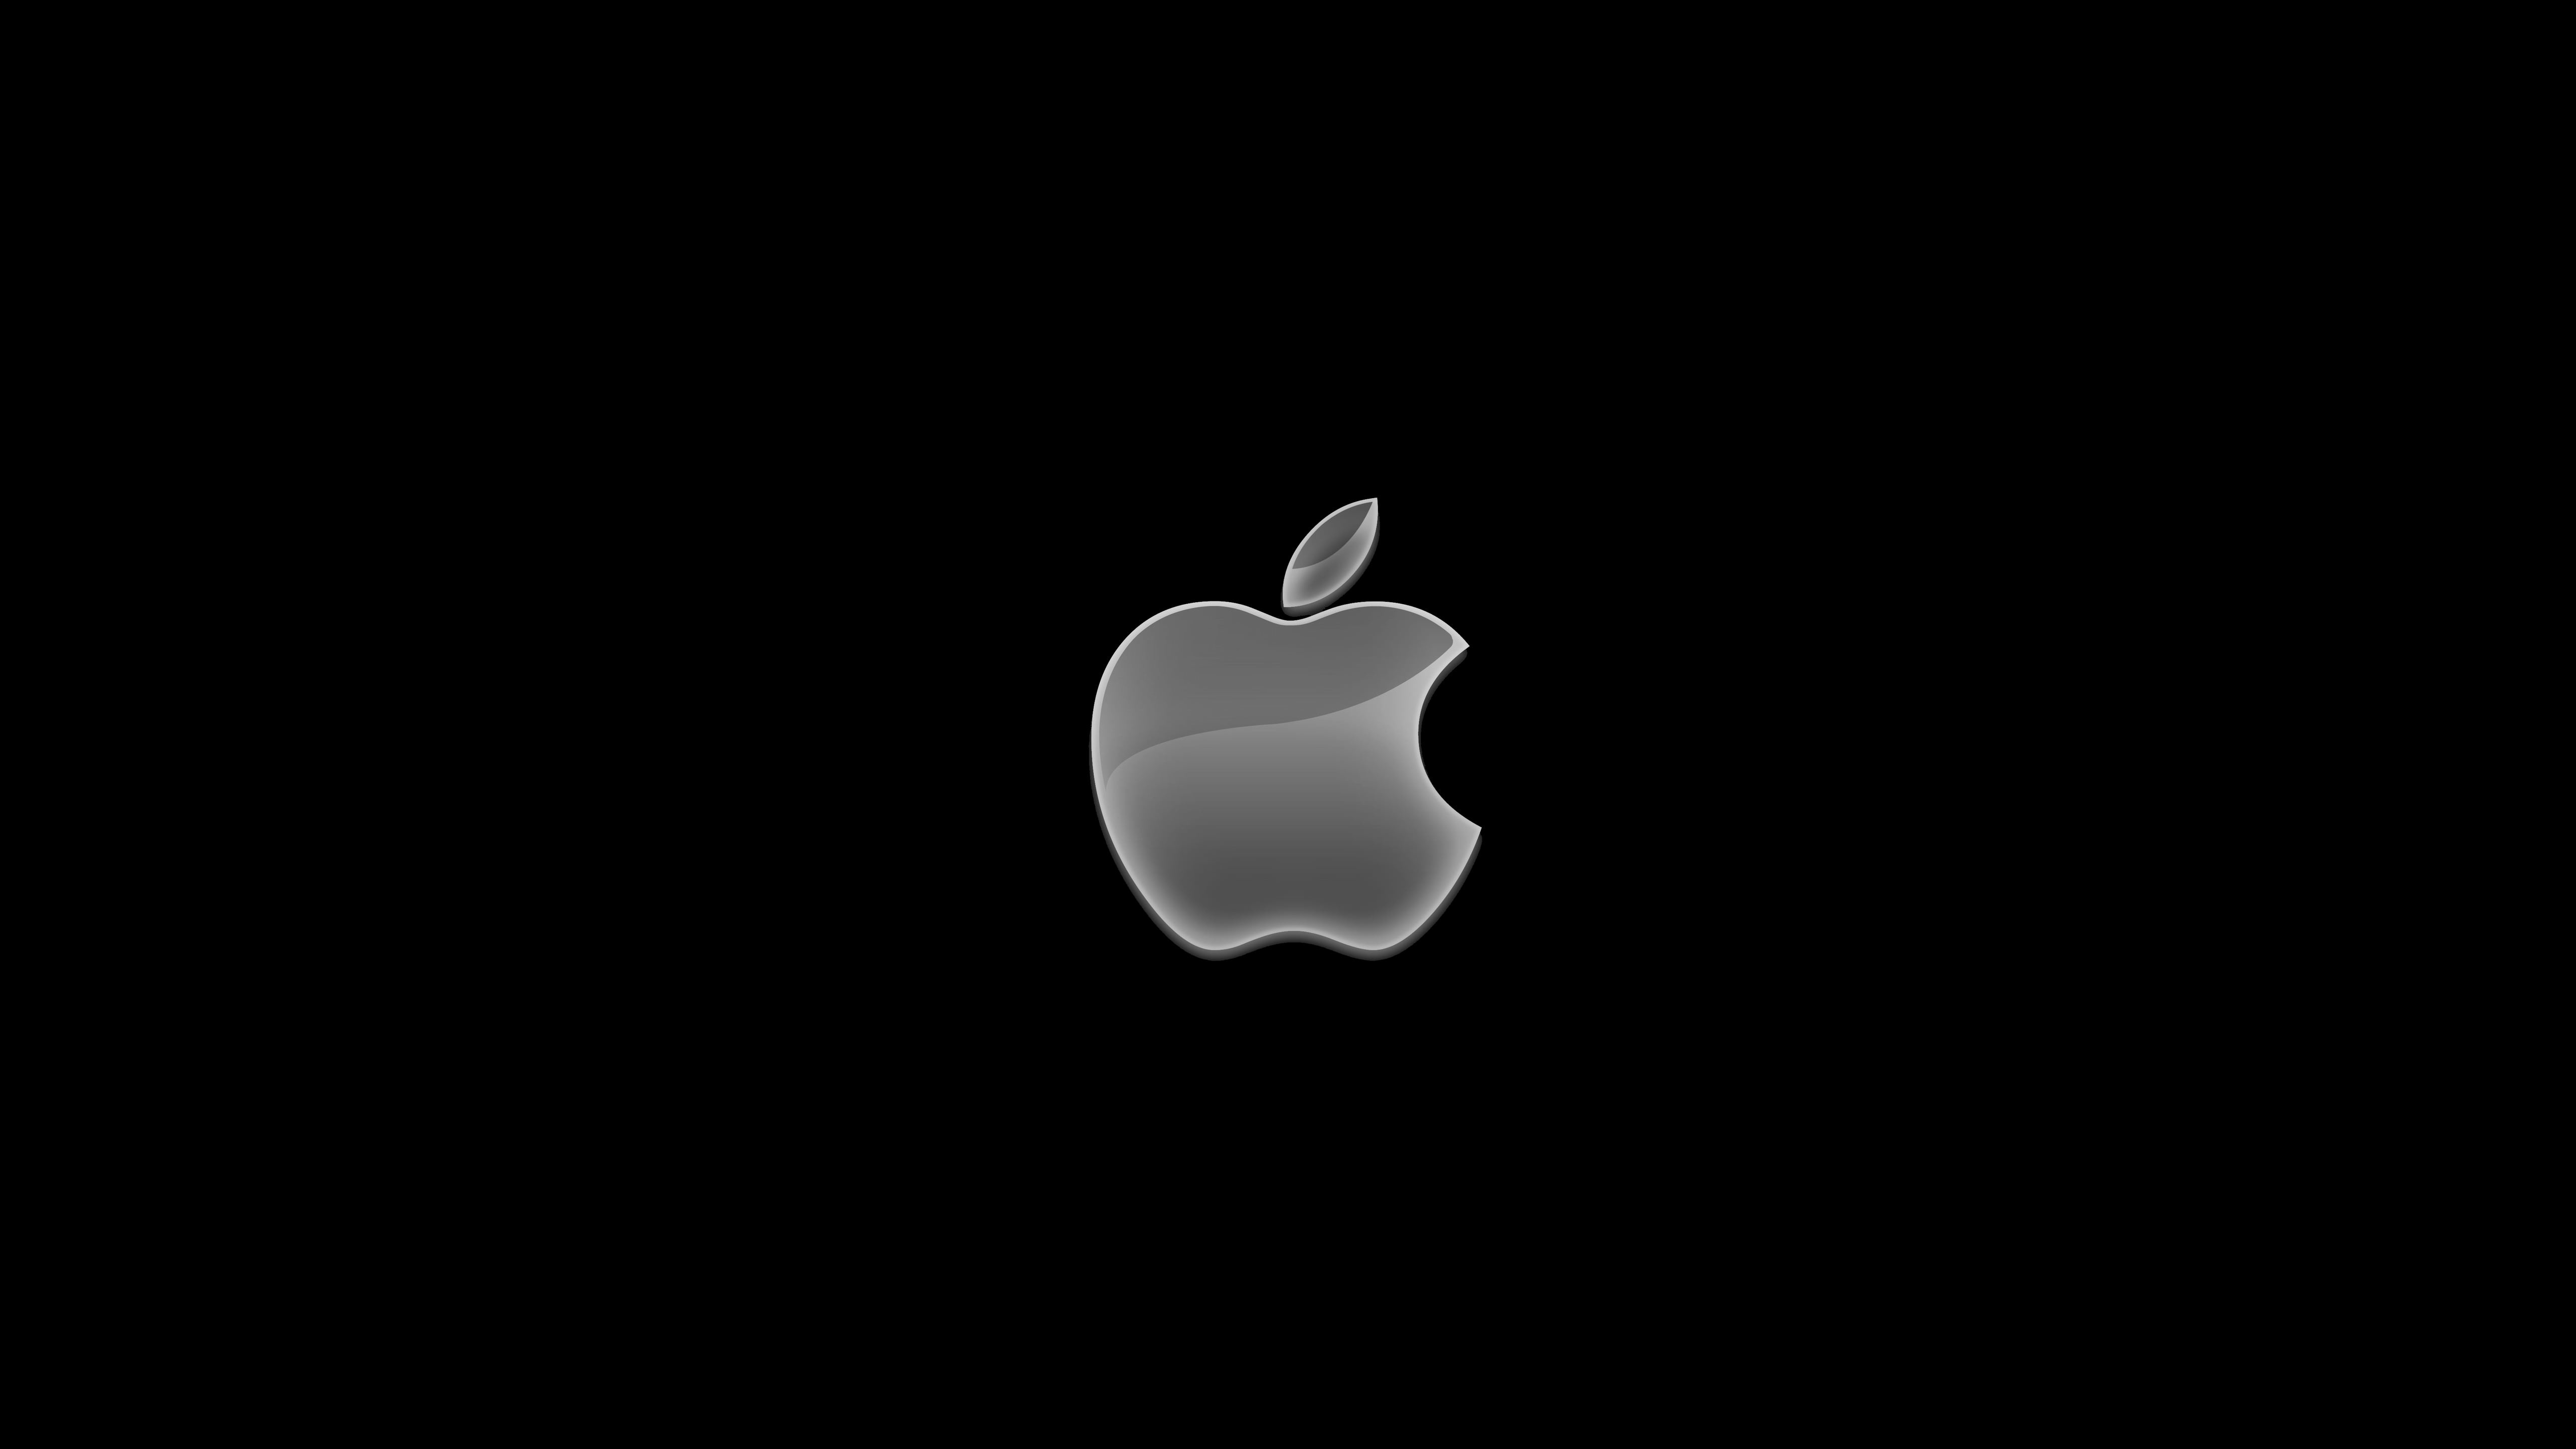 Лапка на айфоне. Логотип Apple. Яблоко айфон. Заставка на айфон. Яблоко на черном фоне.